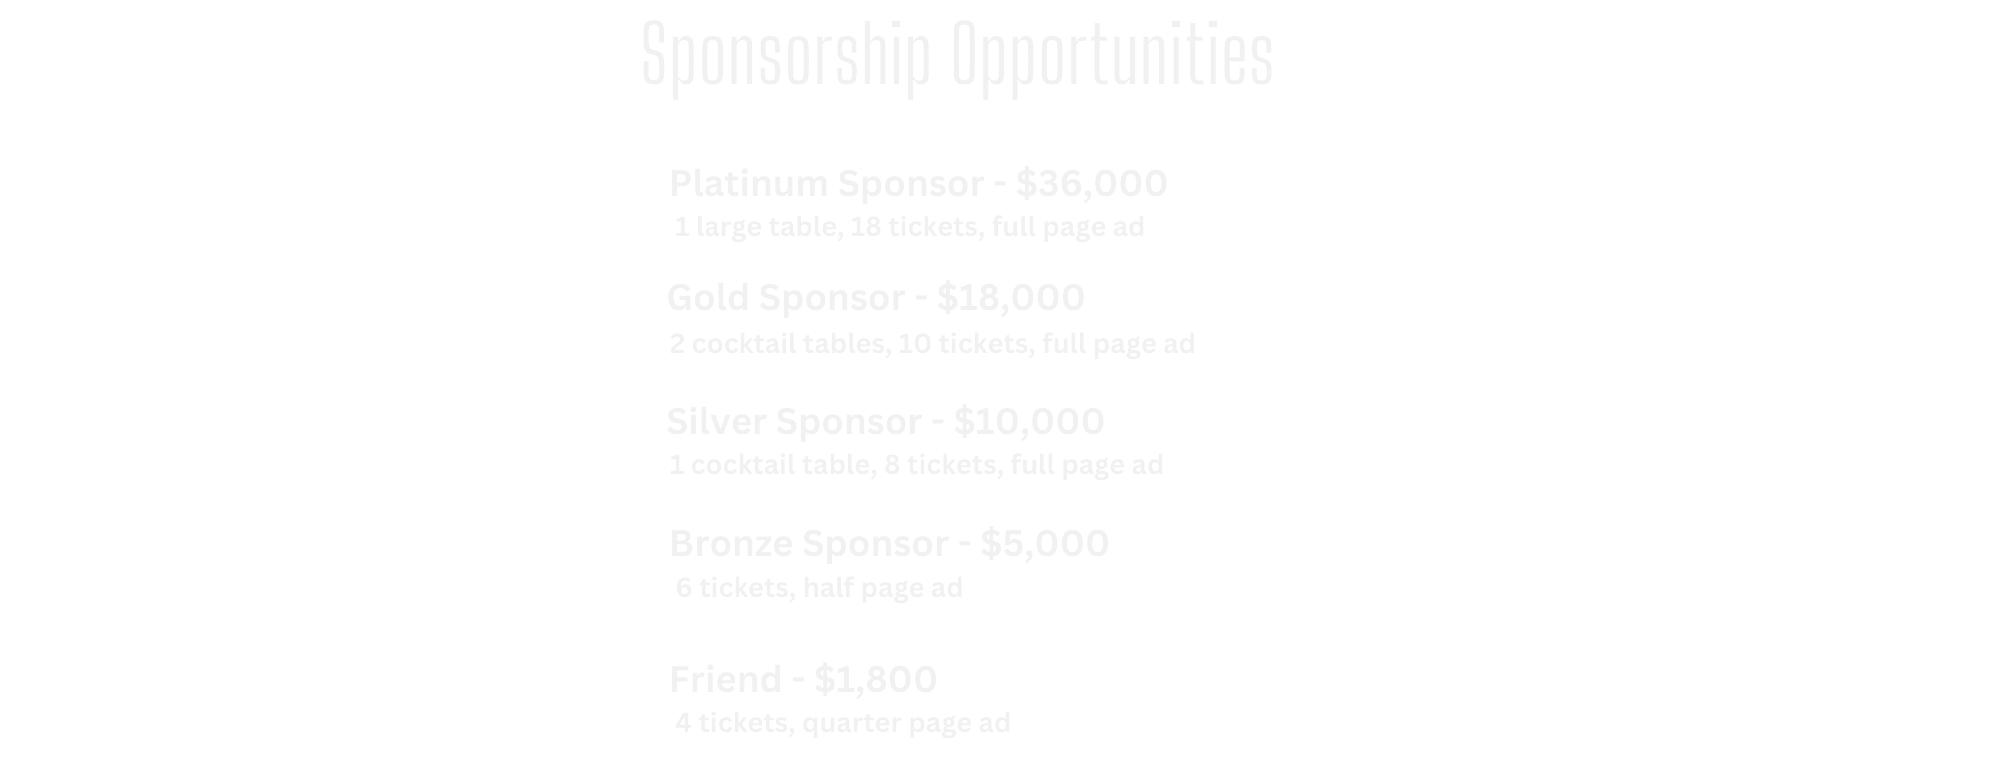 Bash sponsorships